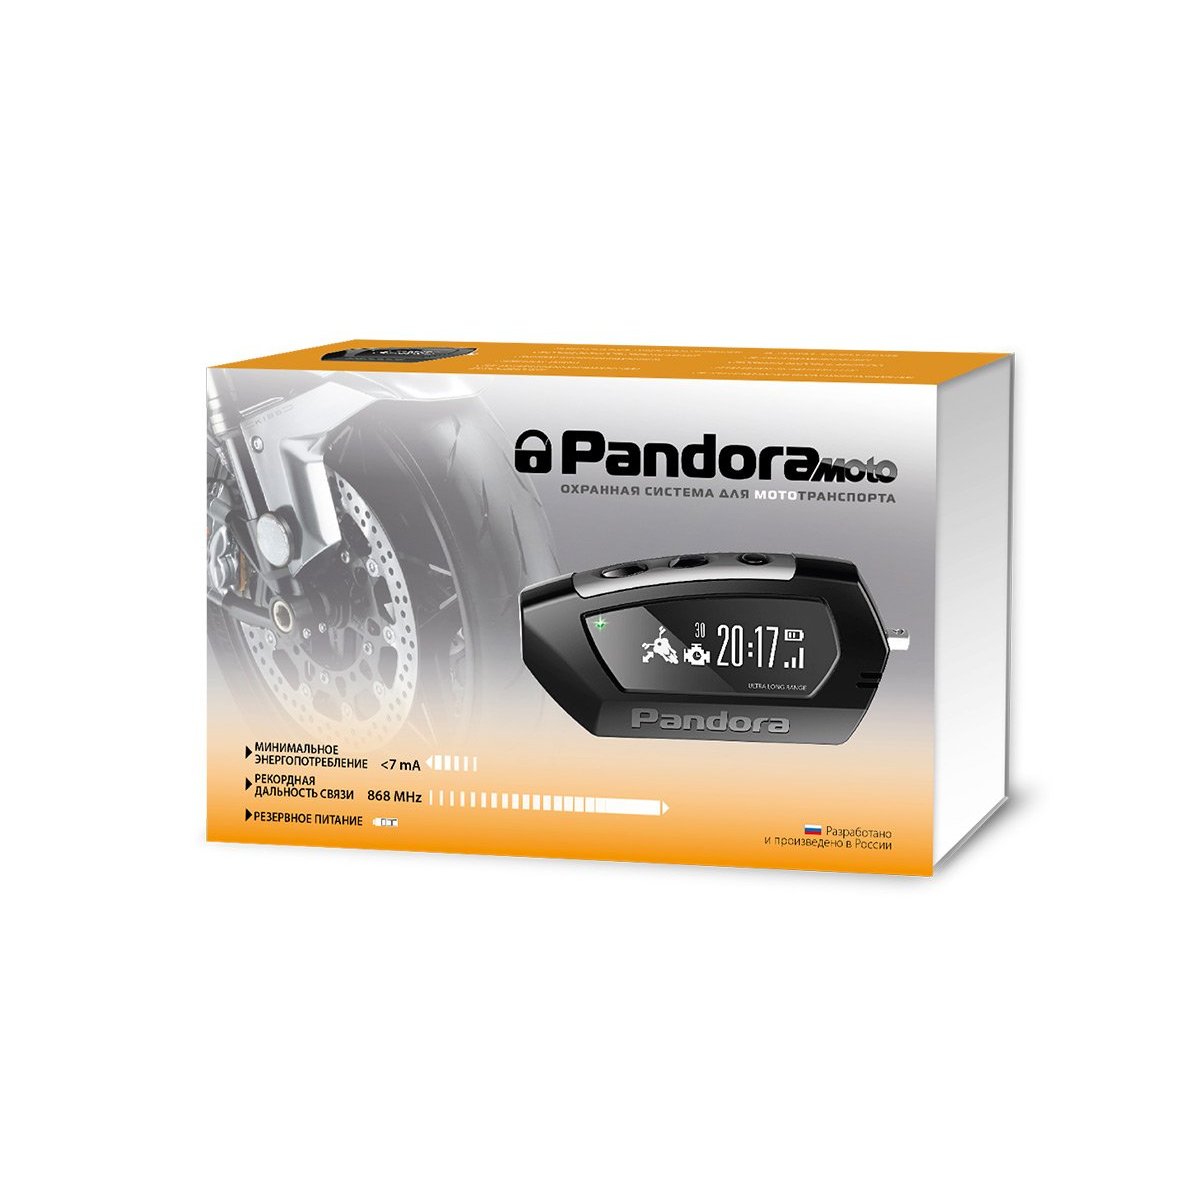 Pandora DX 42 Moto